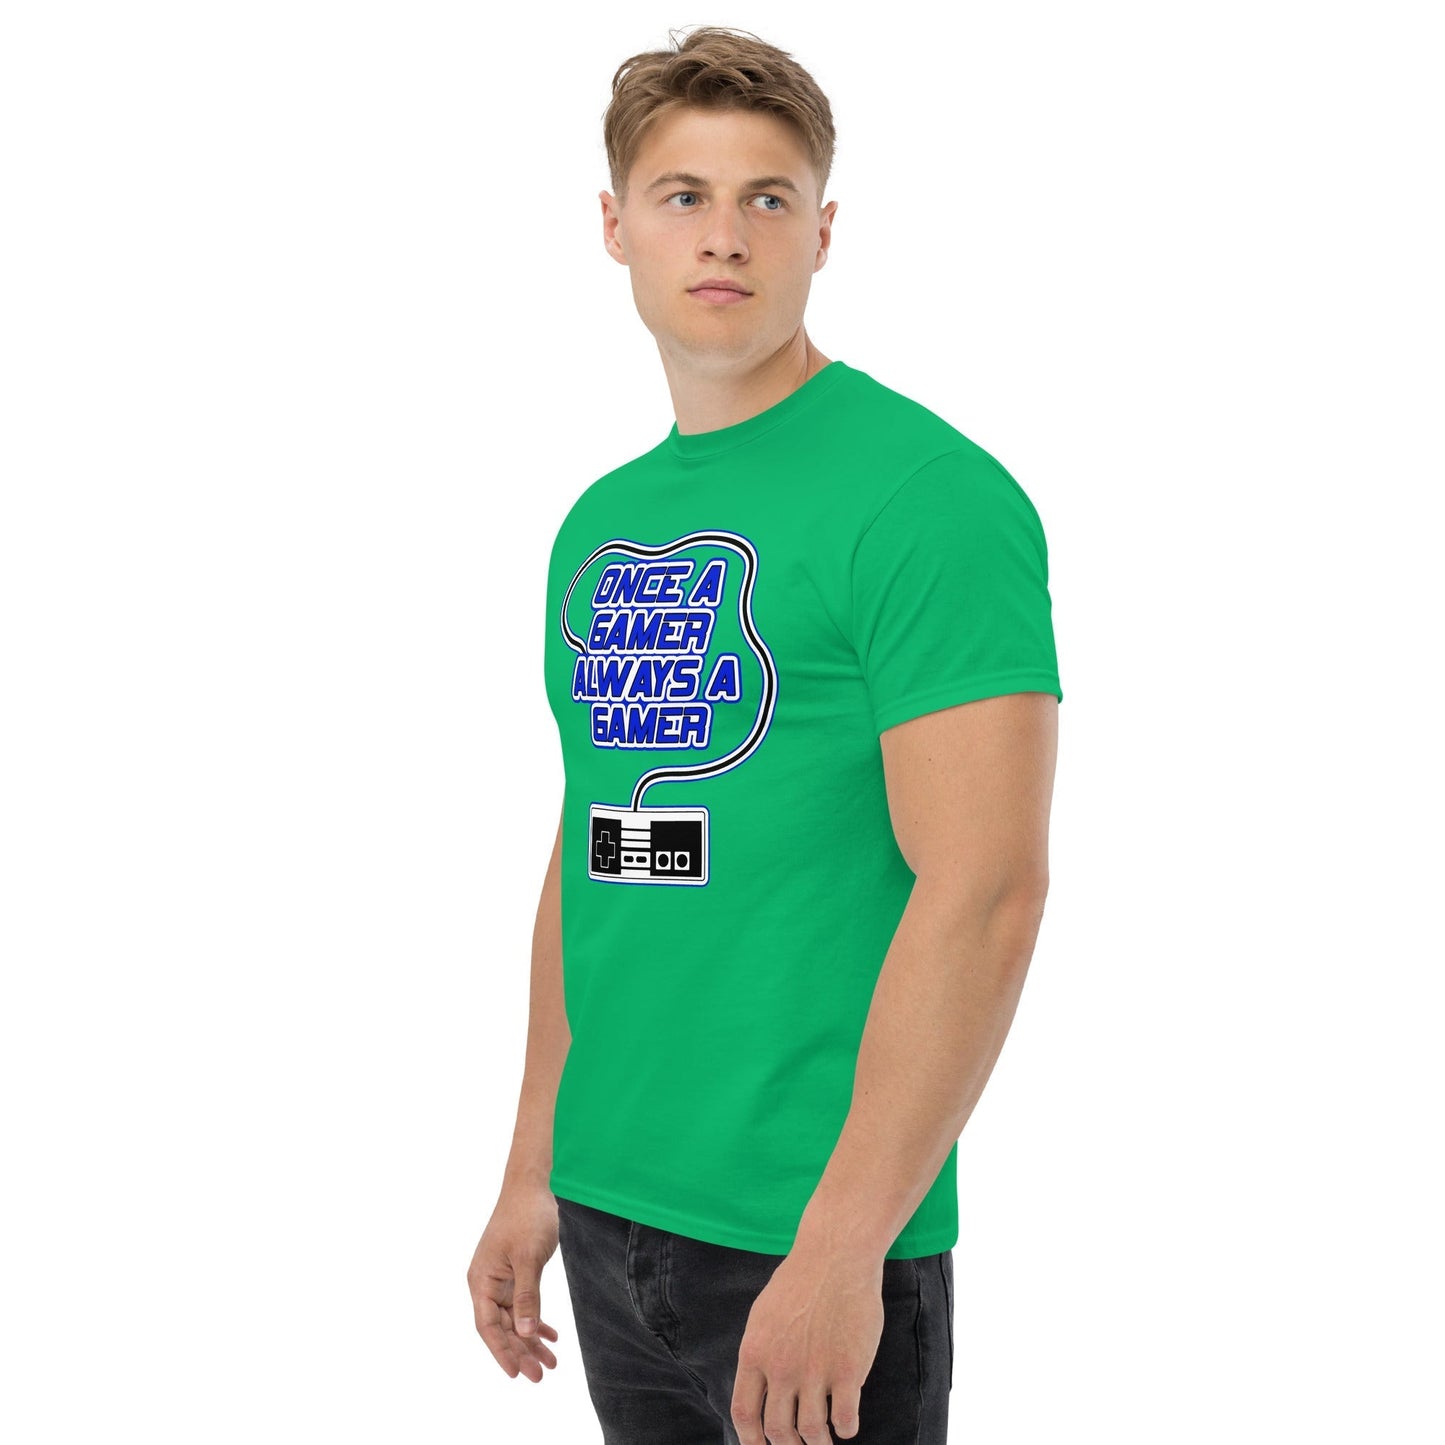 Scar Design T shirt Always a Gamer T-shirt